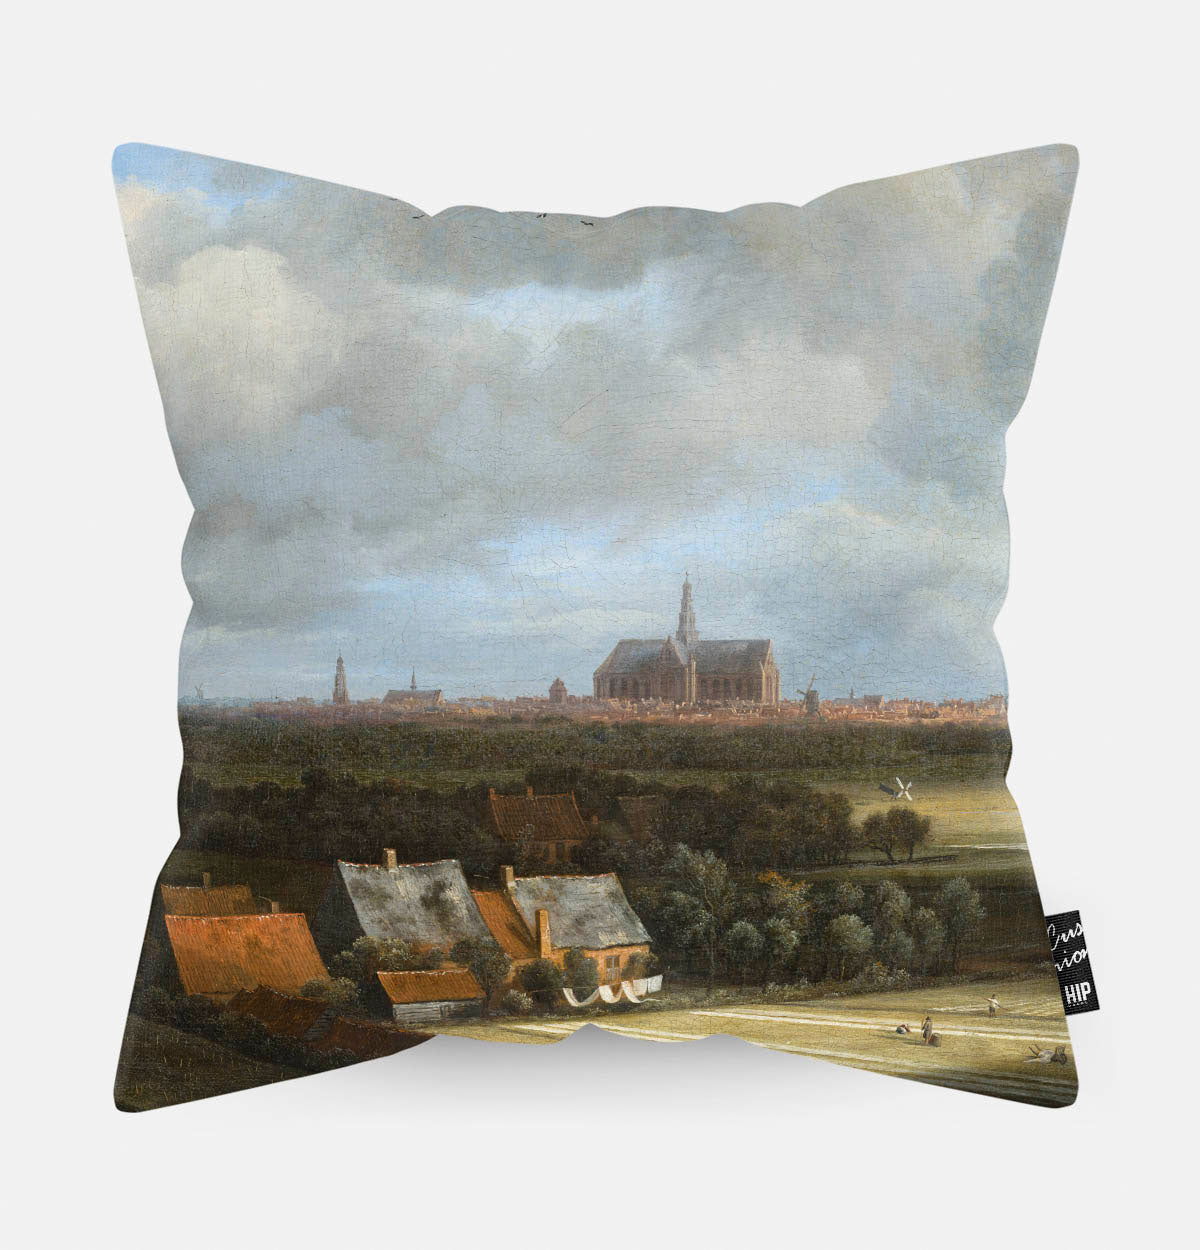 Kussen met schildering van Gezicht op Haarlem met bleekvelden erop afgebeeld.